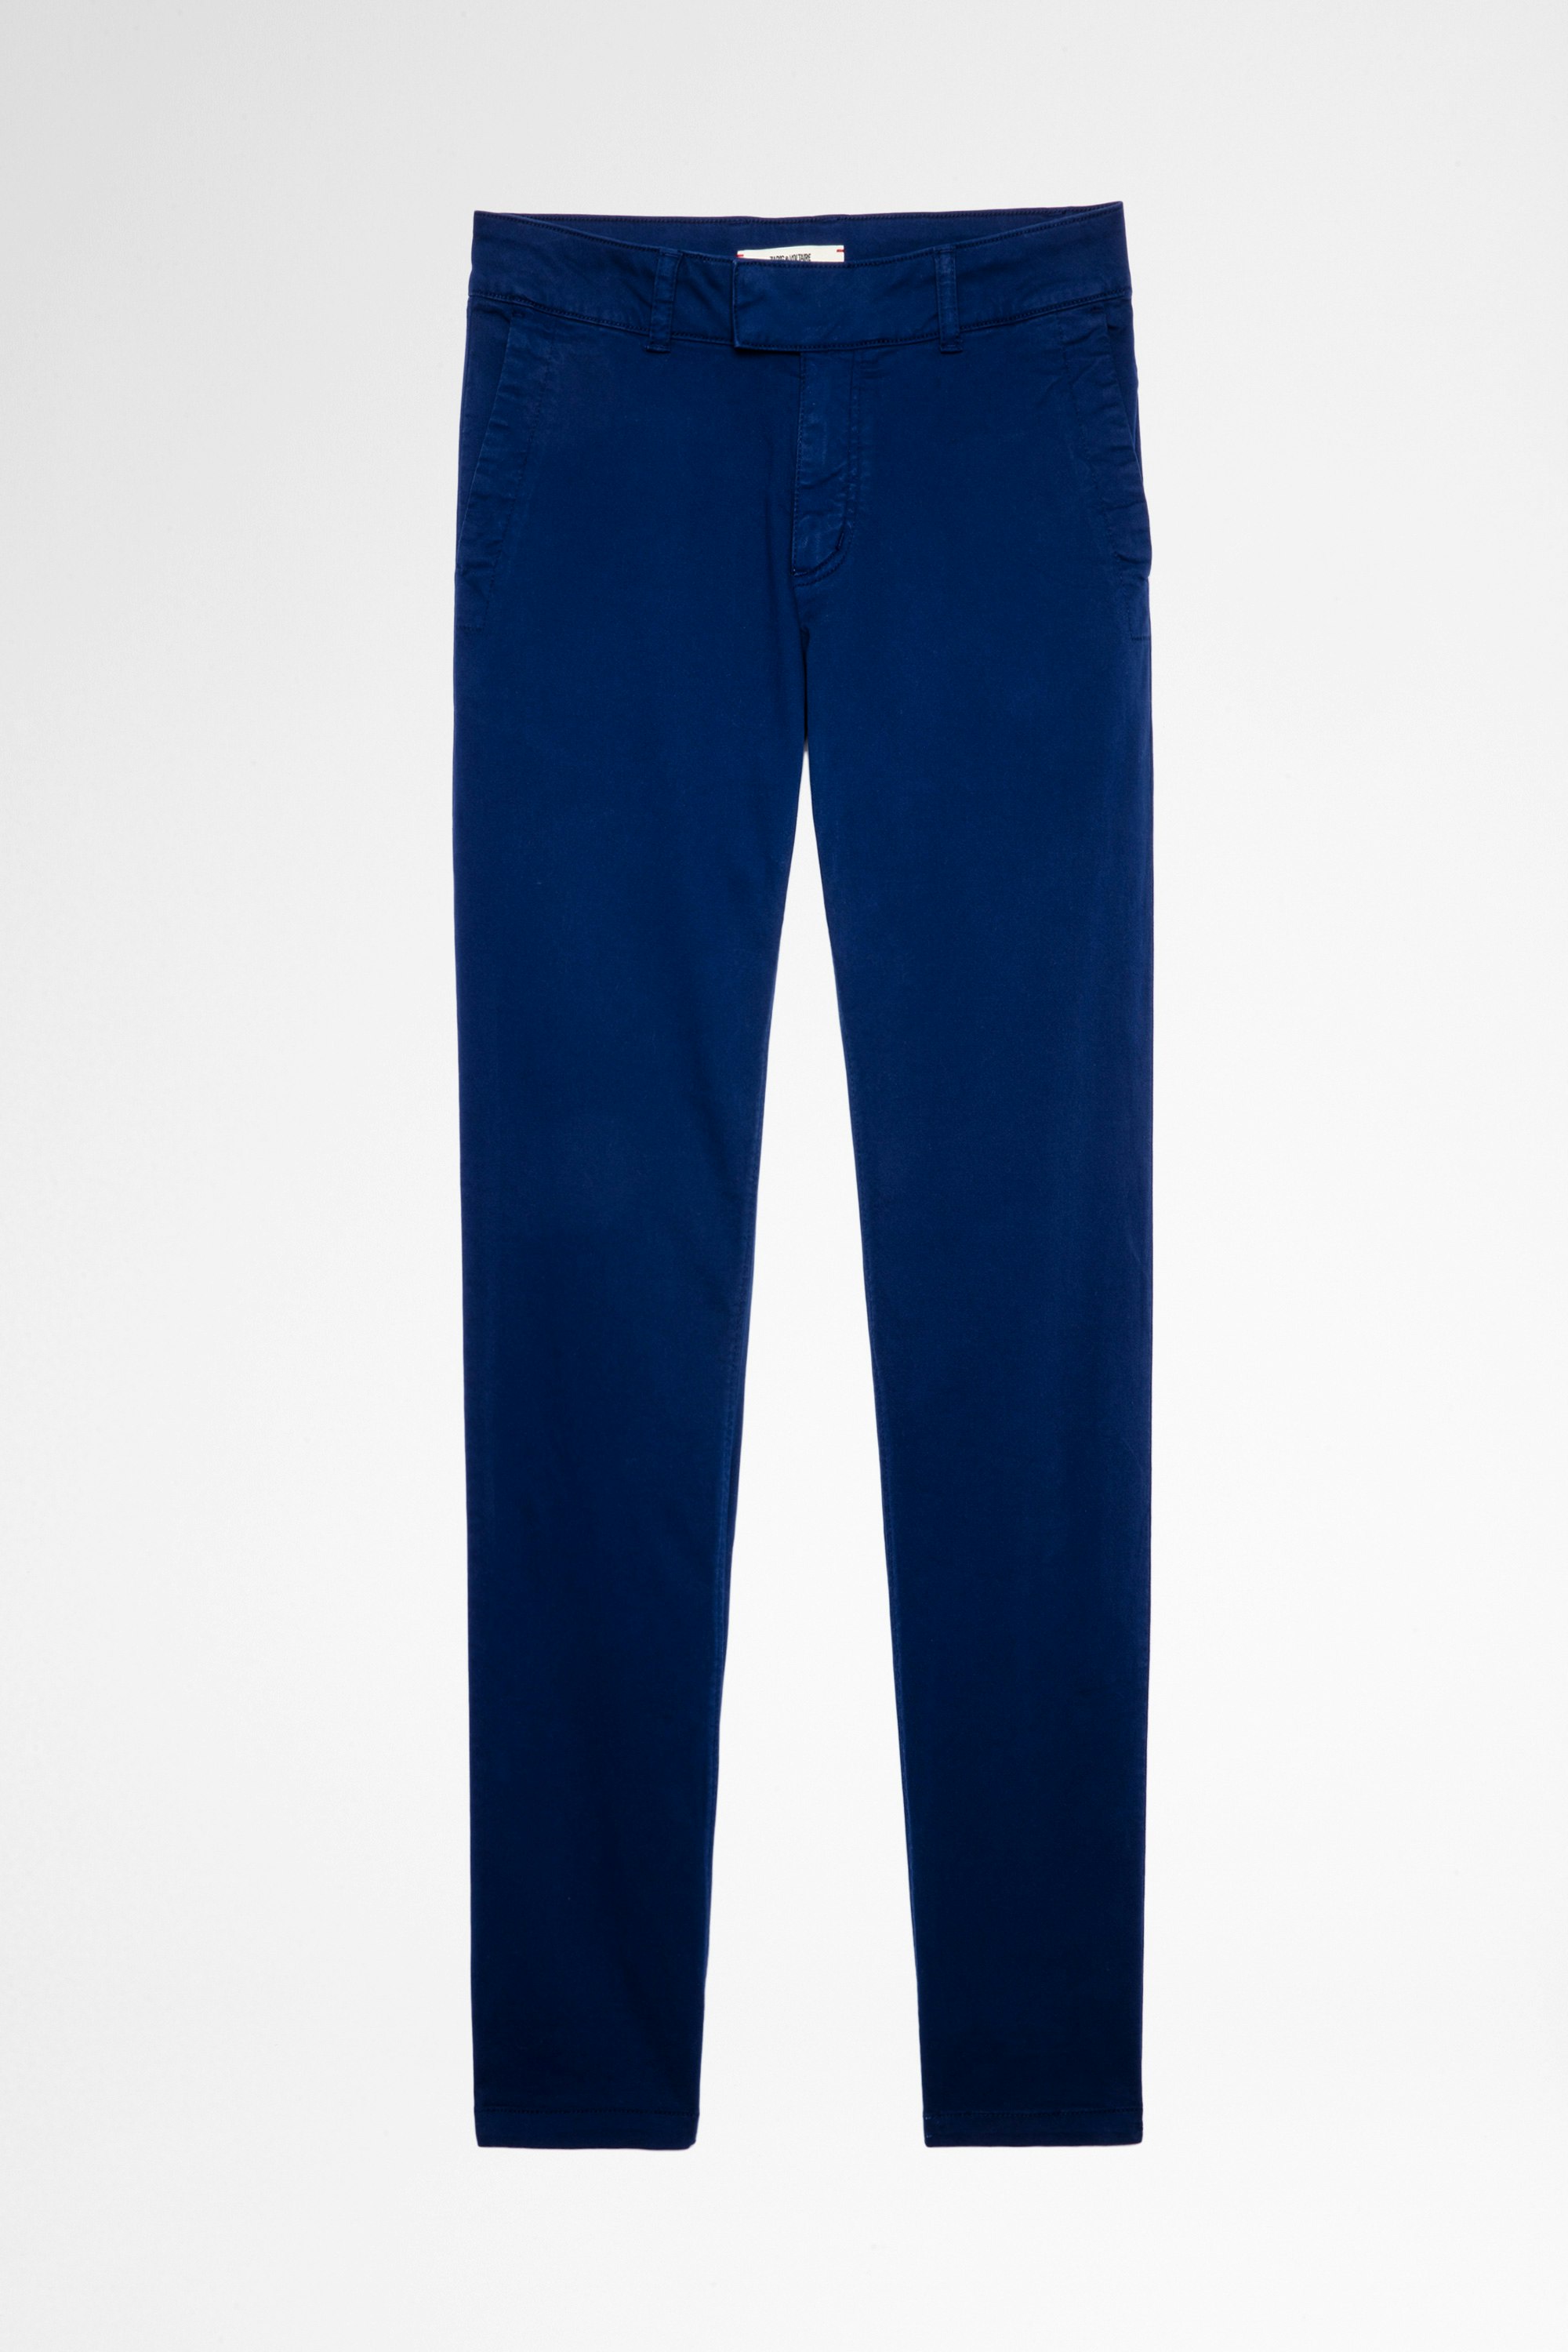 Philo Trousers Men's royal blue cotton trousers